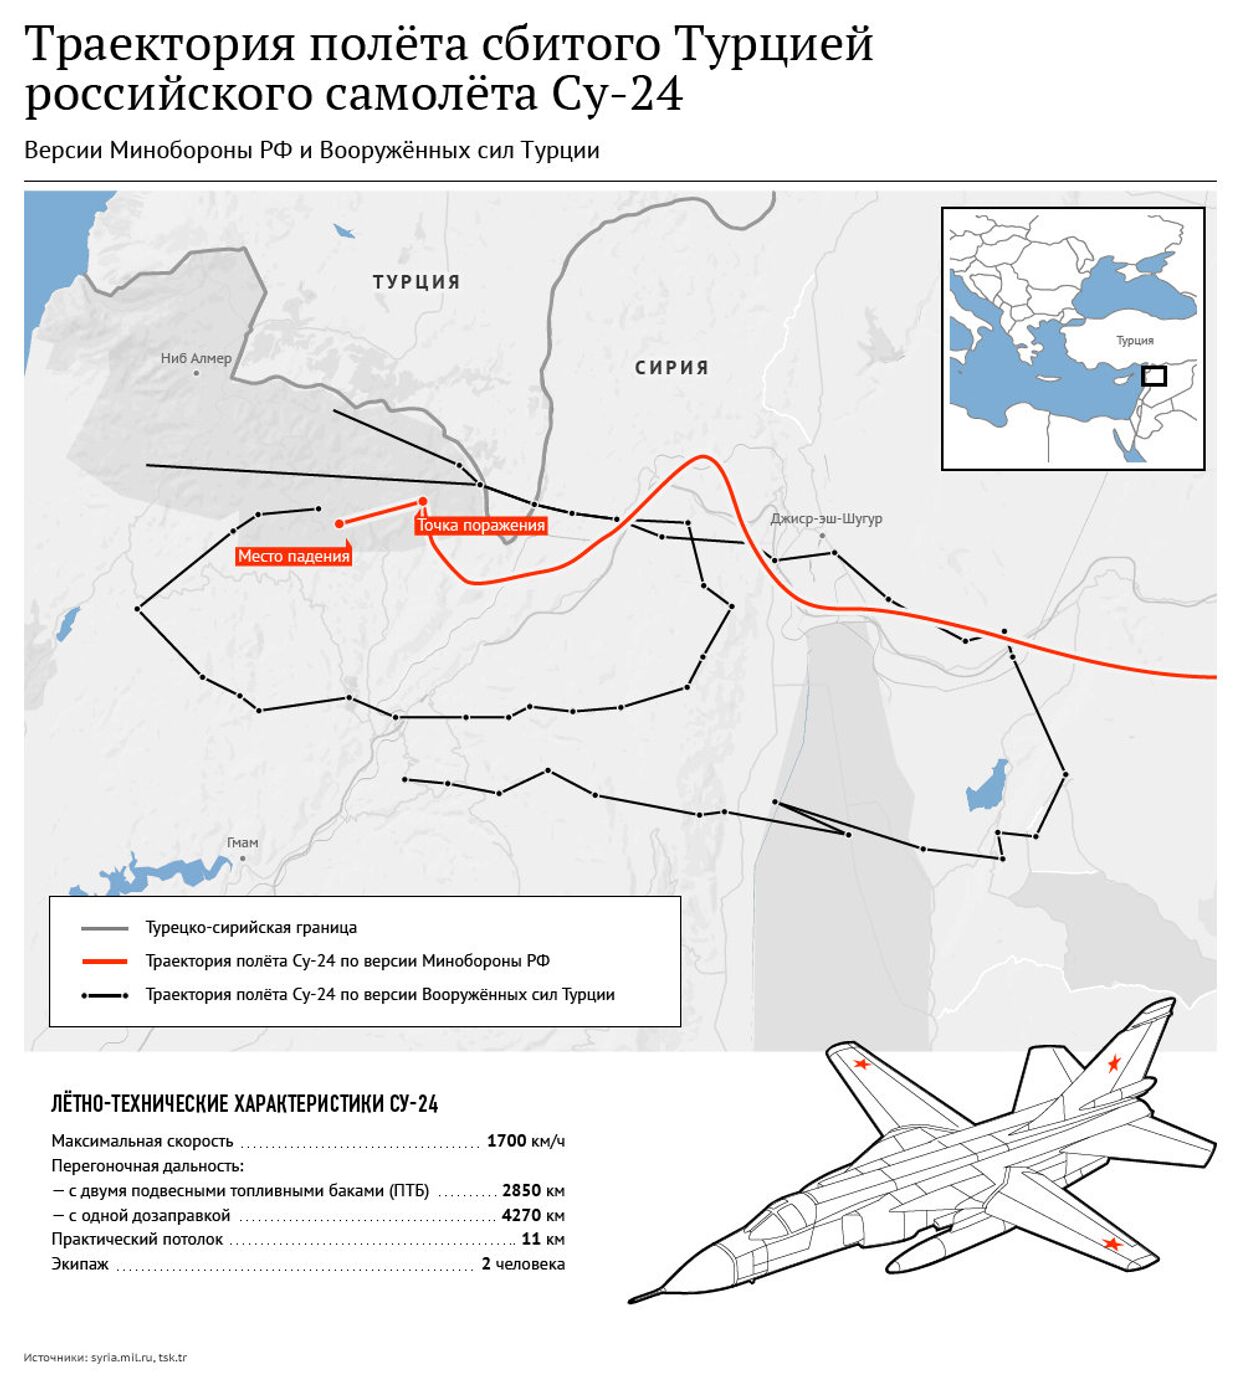 Траектория полета сбитого Су-24. Версии Минобороны России и ВС Турции